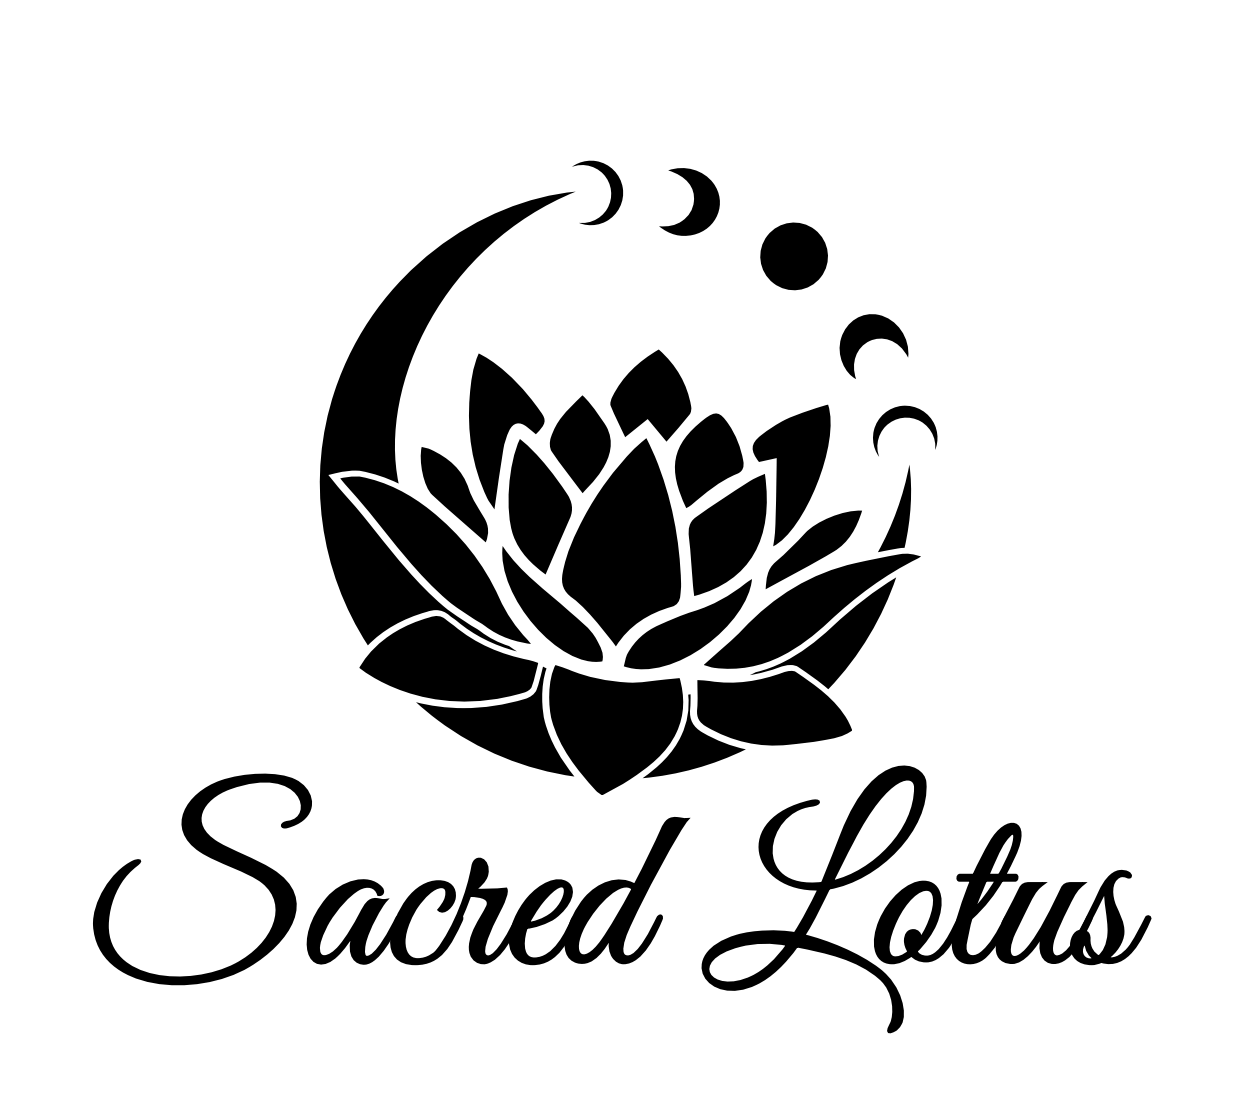 Sacred Lotus image